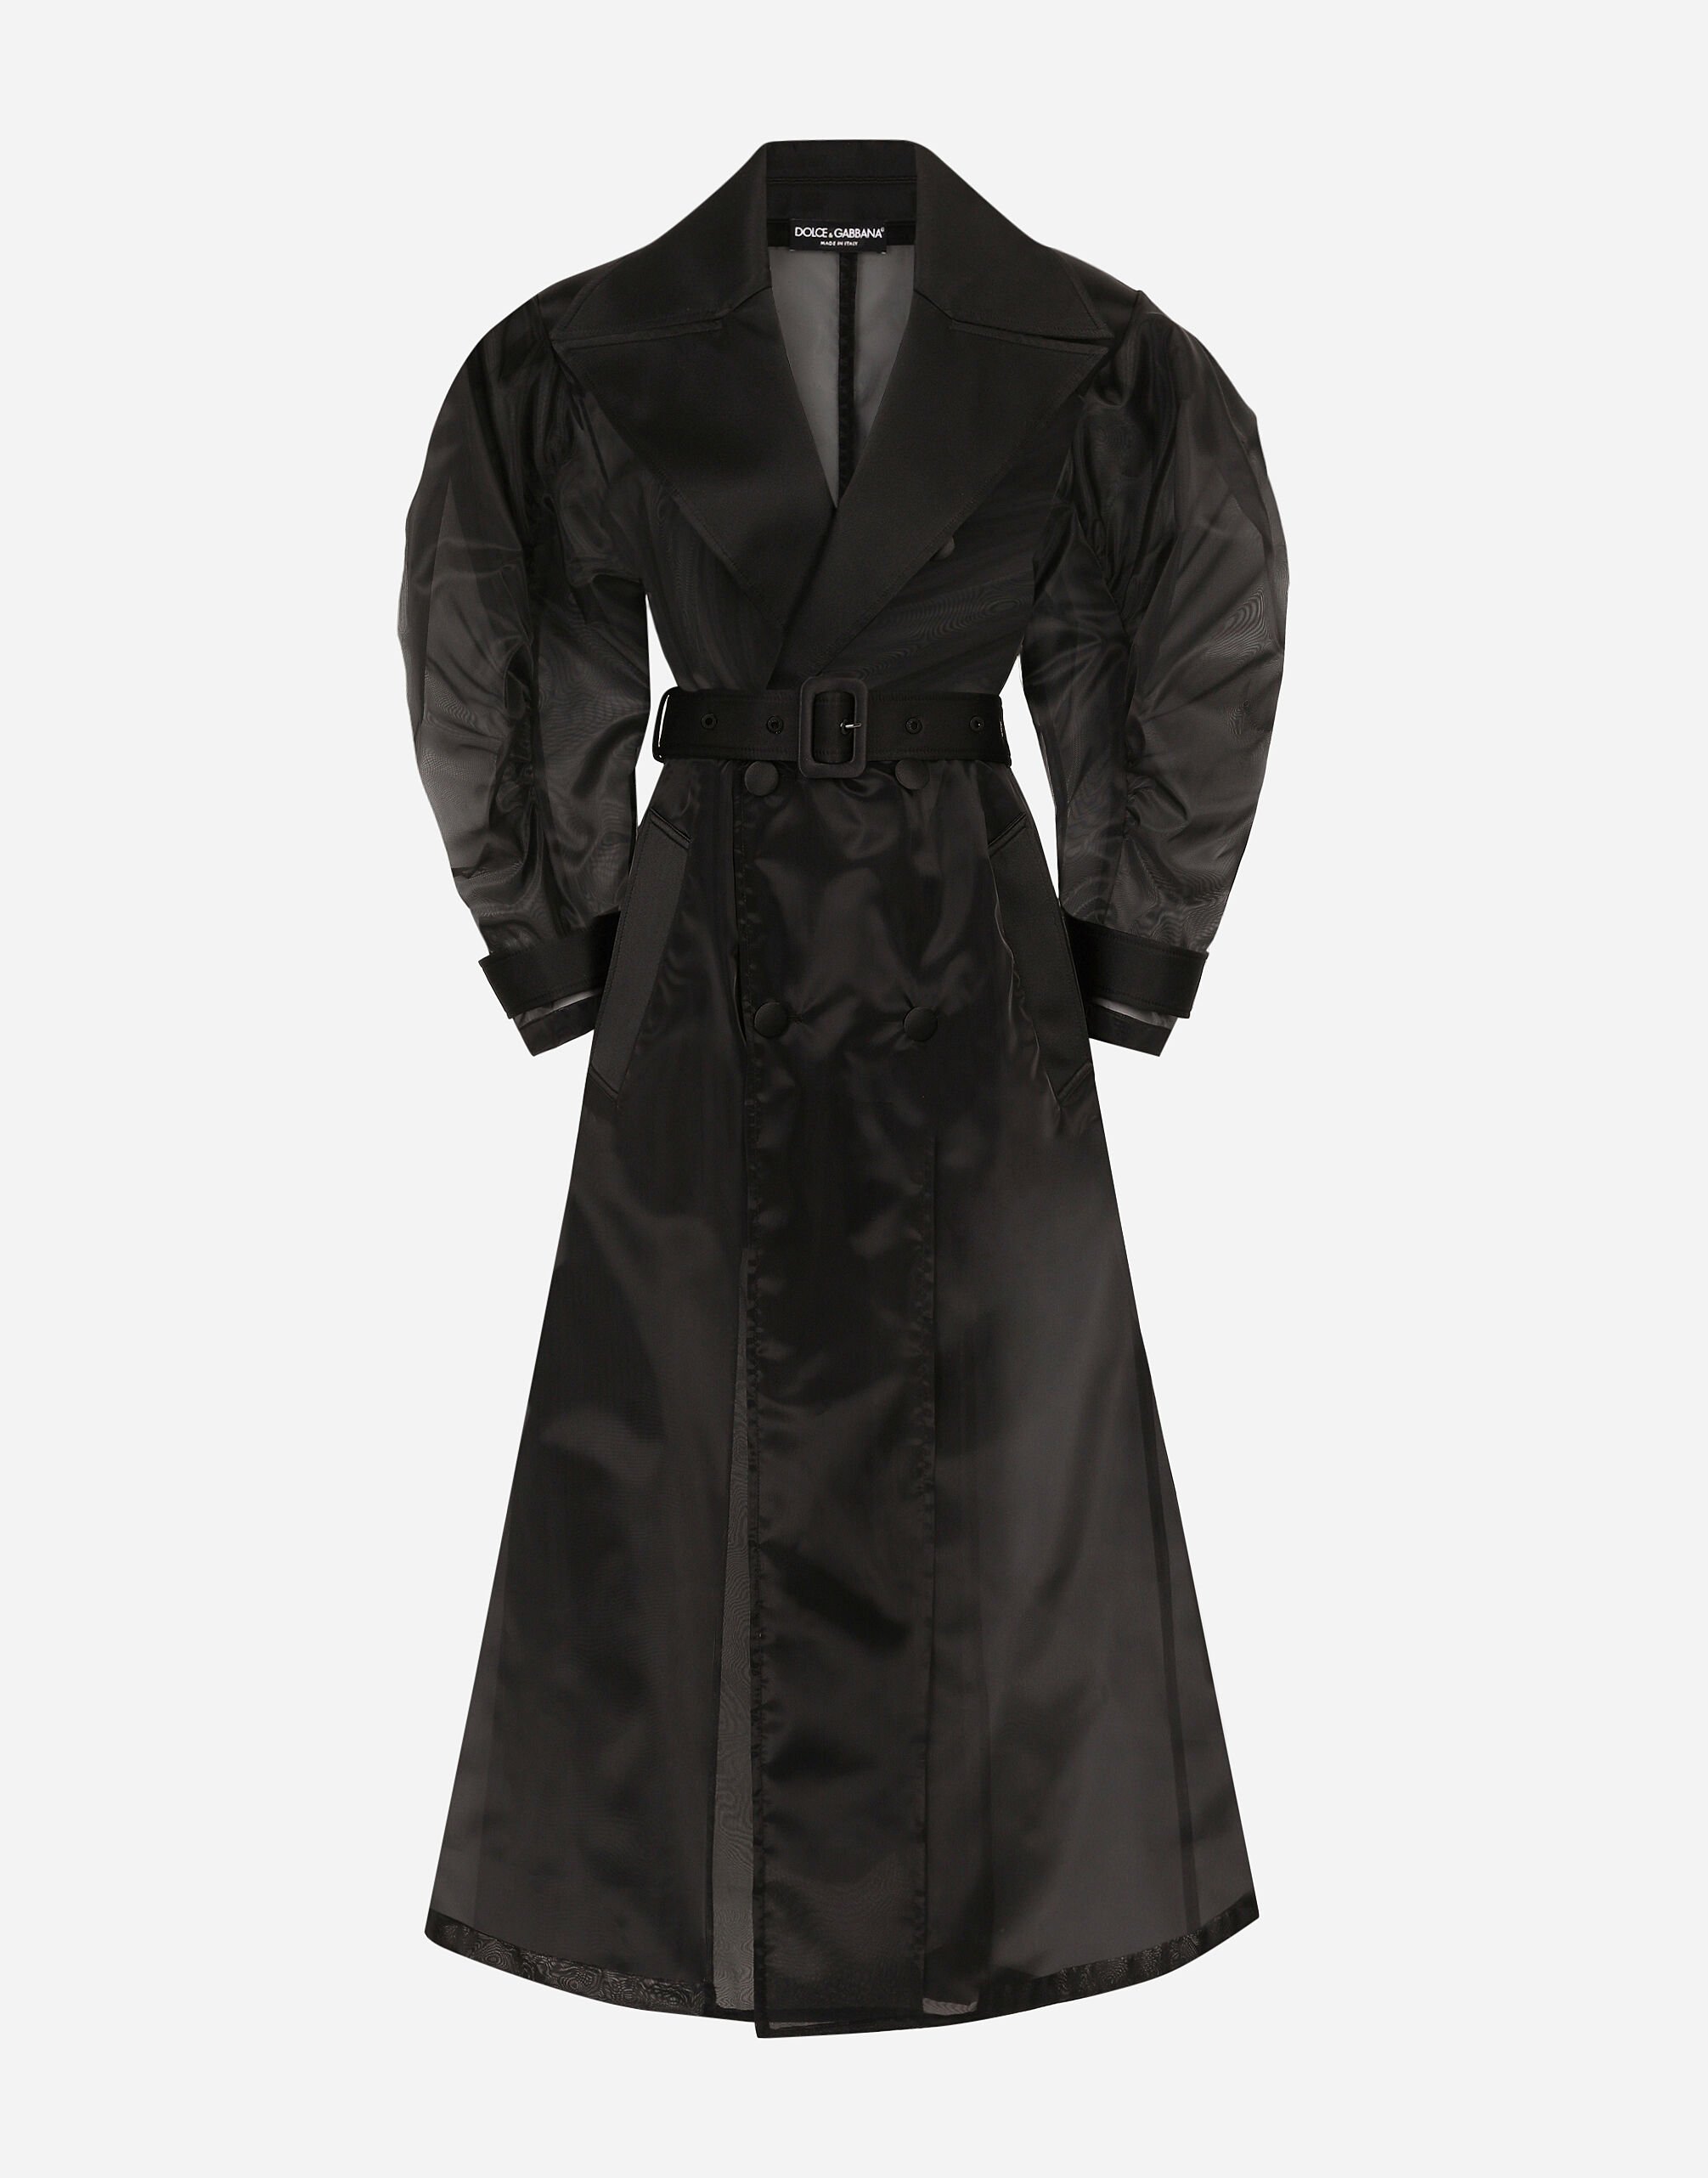 Dolce & Gabbana Тренч из высокотехнологичной органзы с присборенным рукавом черный F0D1OTFUMG9